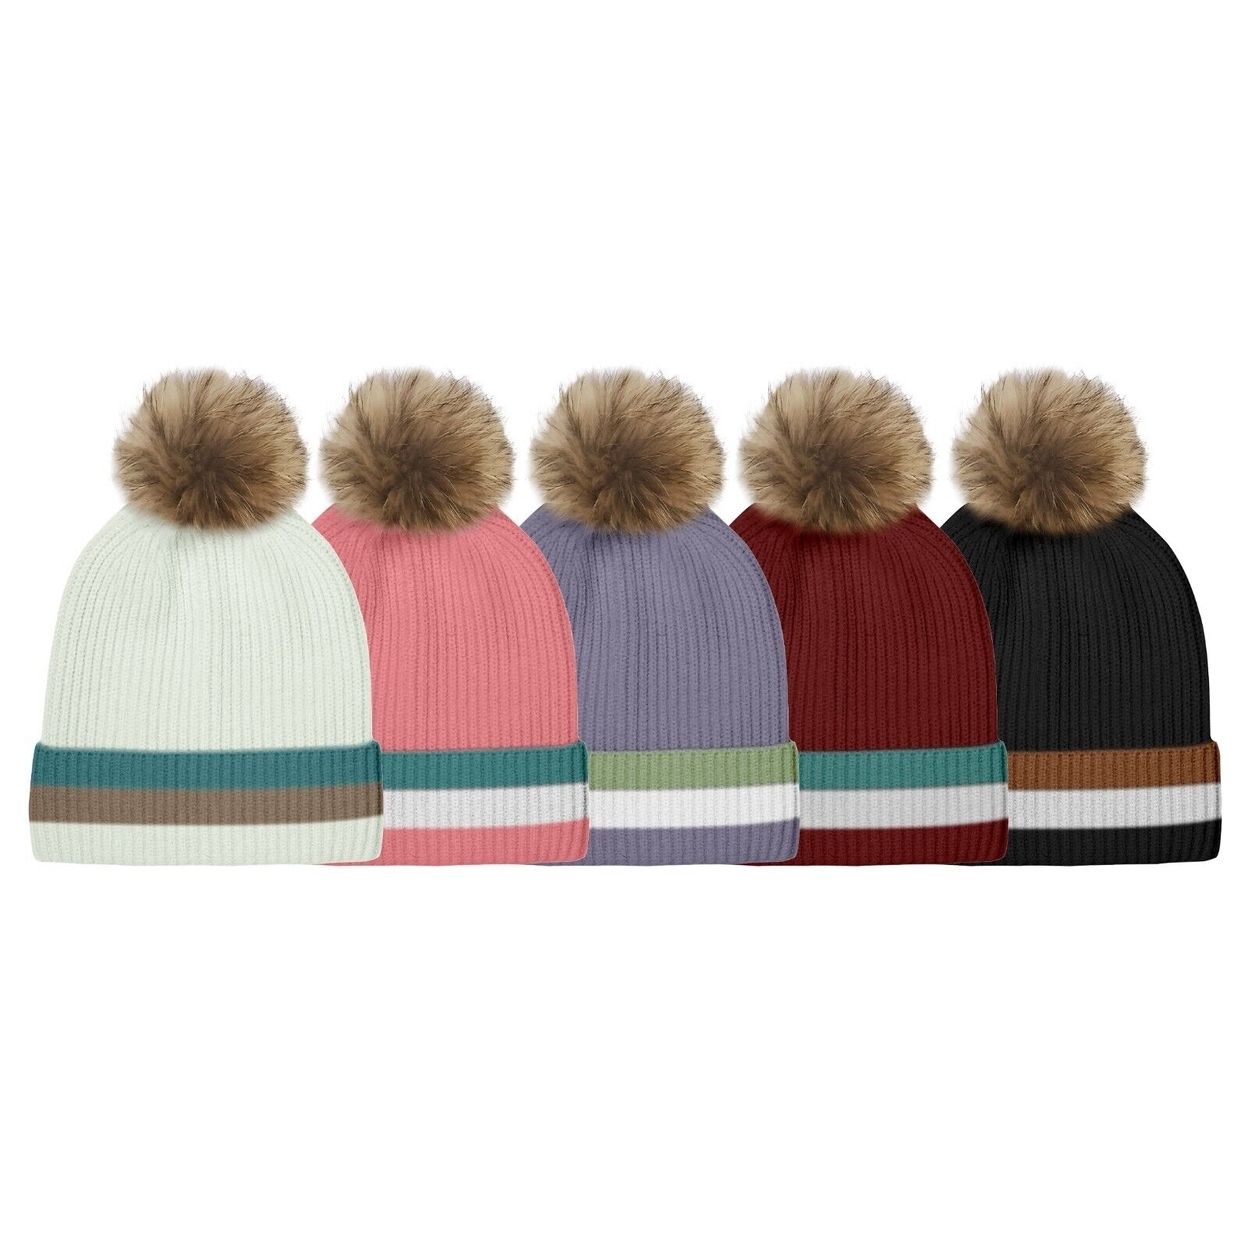 2-Pack: Women's Ultra-Soft Winter Warm Knit Feel Pom Pom Hat W/ Faux Fur Lining - Solid